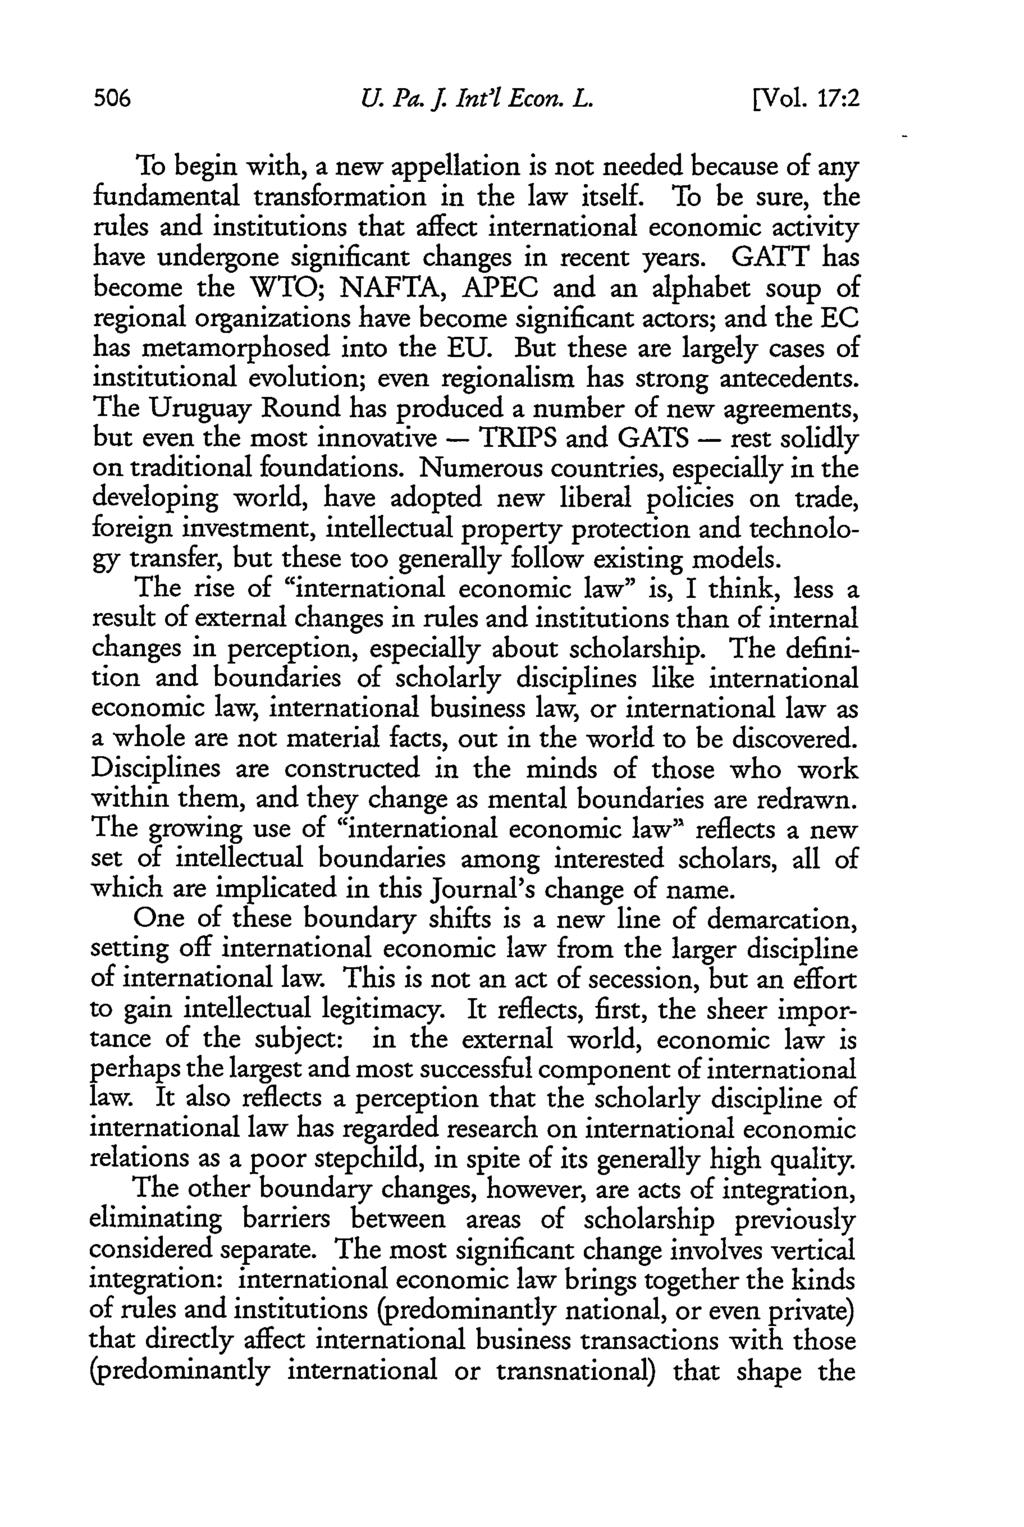 University of Pennsylvania Journal of International Law, Vol. 17, Iss. 2 [2014], Art. 1 U. Pa. J. Int'l Econ. L. [Vol.